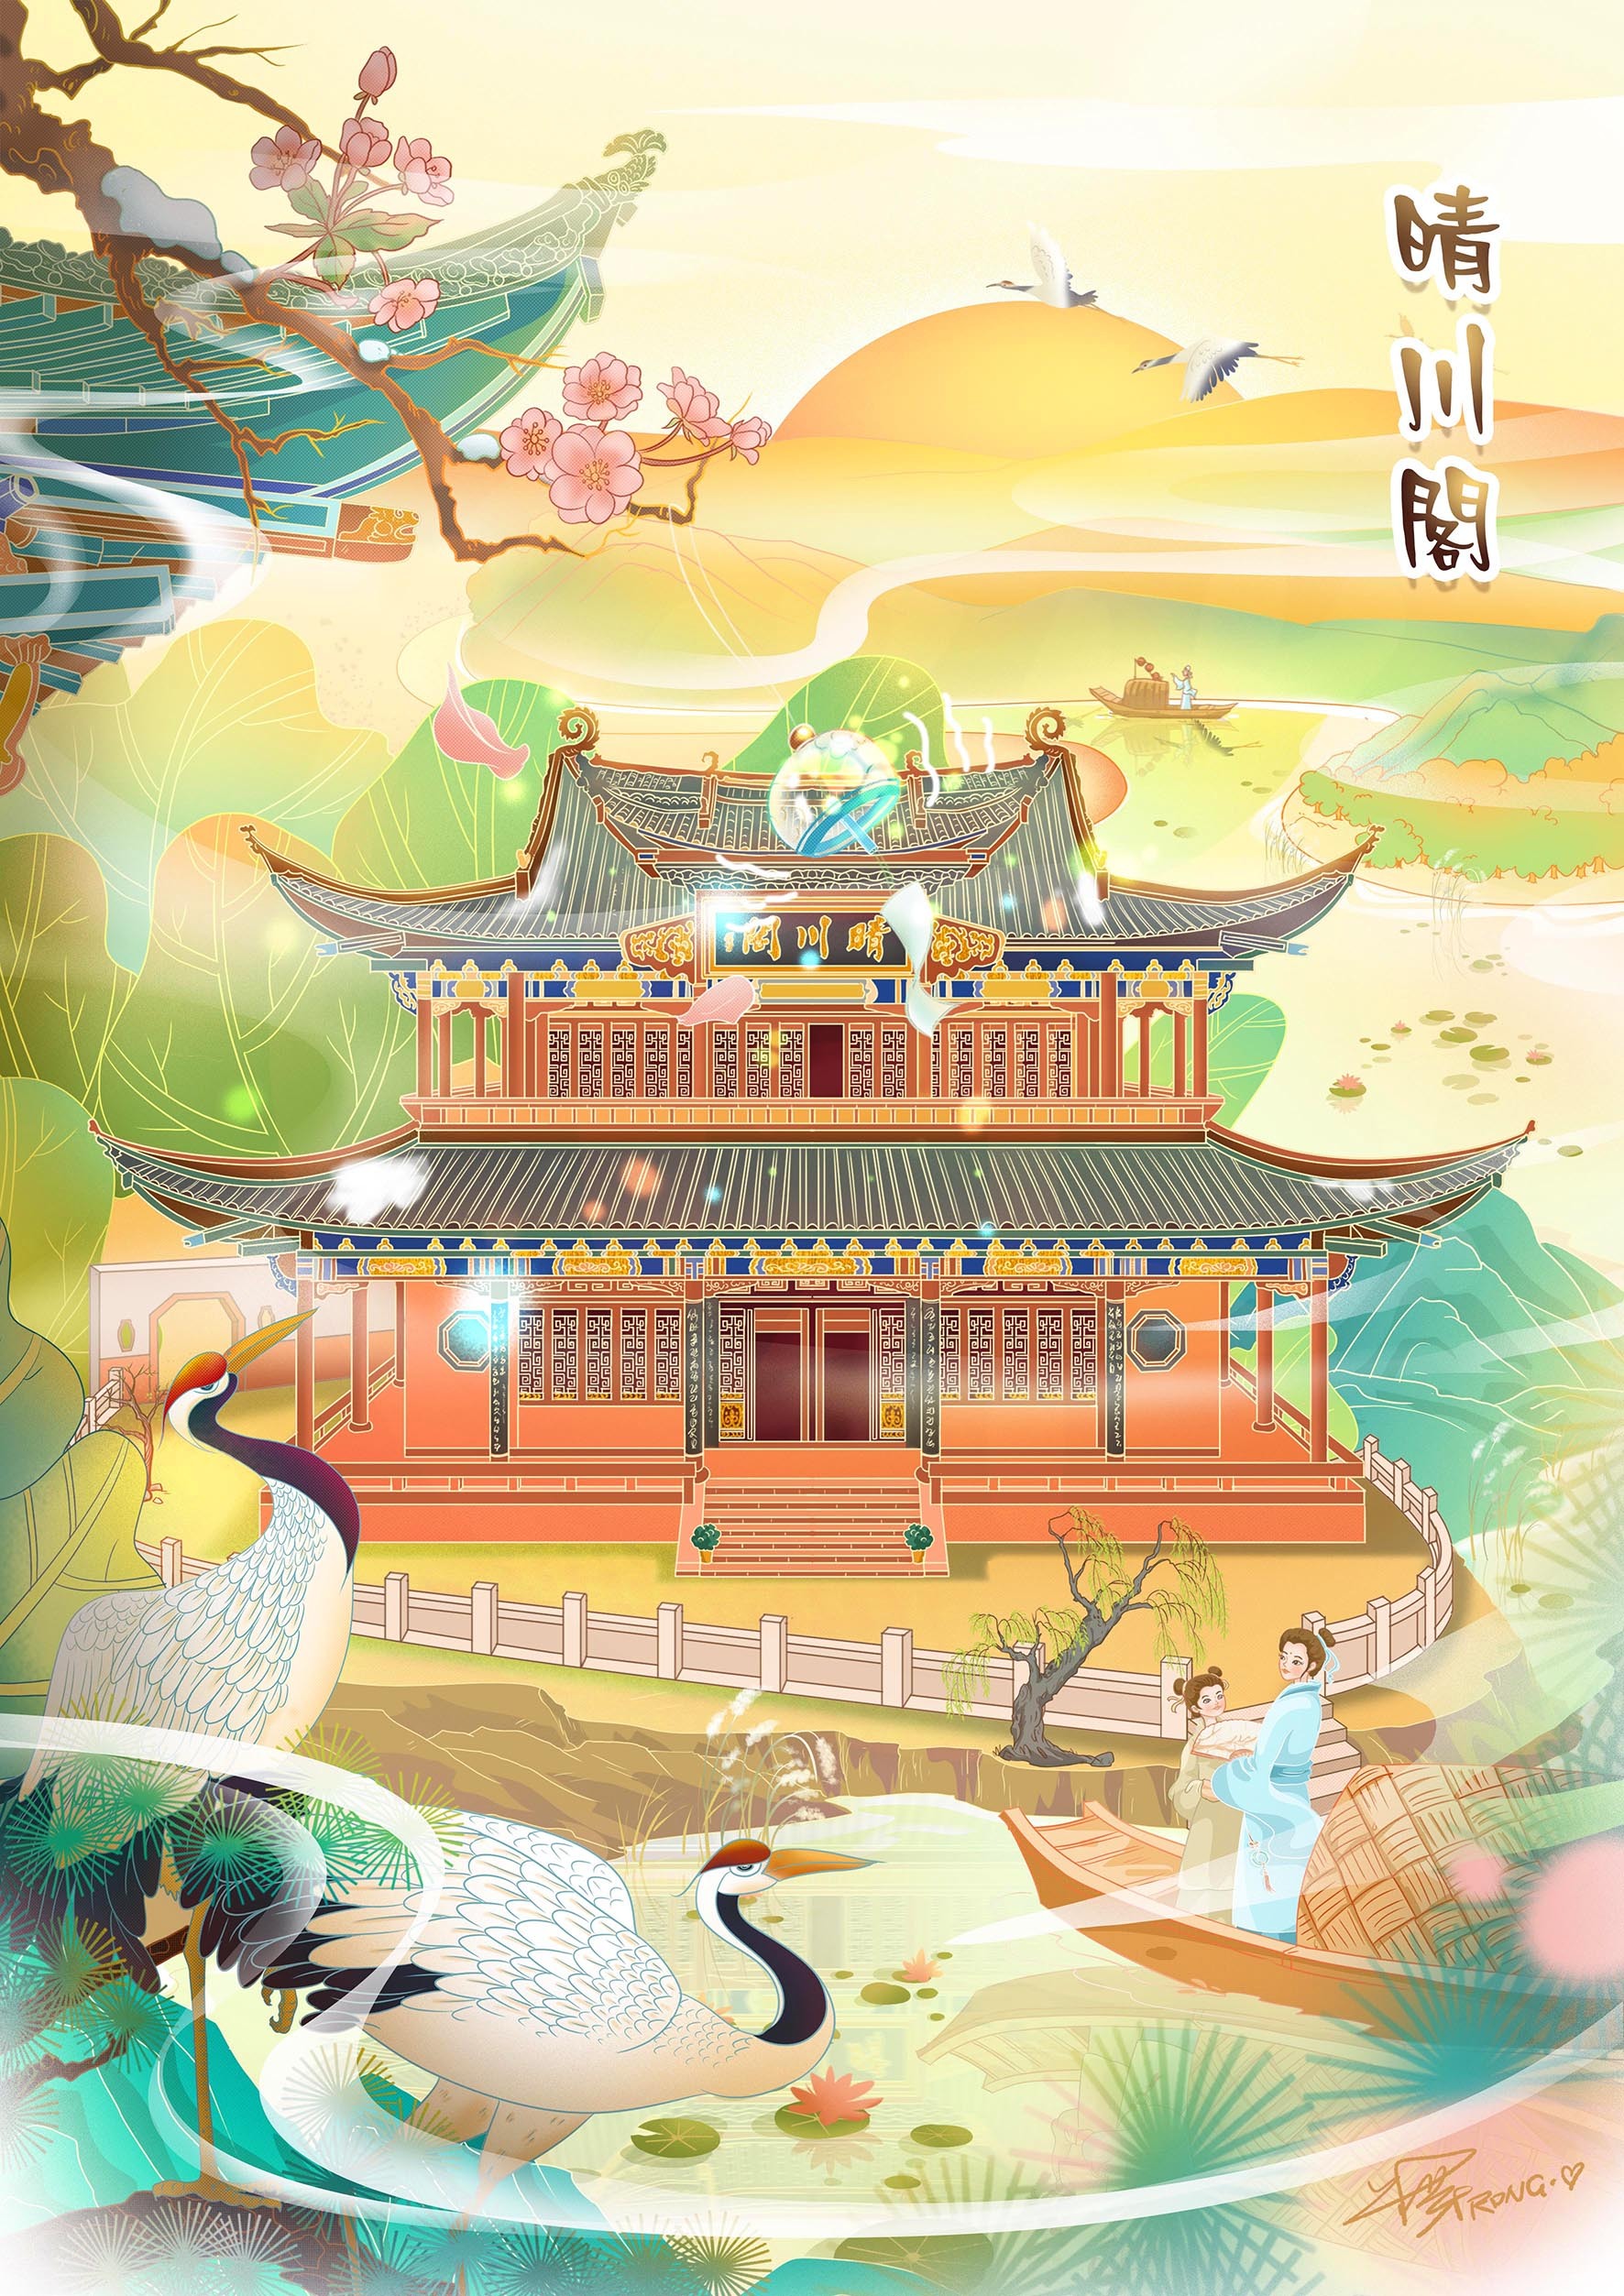 中國神獸麒麟手繪麒麟, 傳統生物, 麒麟, 神獸麒麟素材圖案，PSD和PNG圖片免費下載